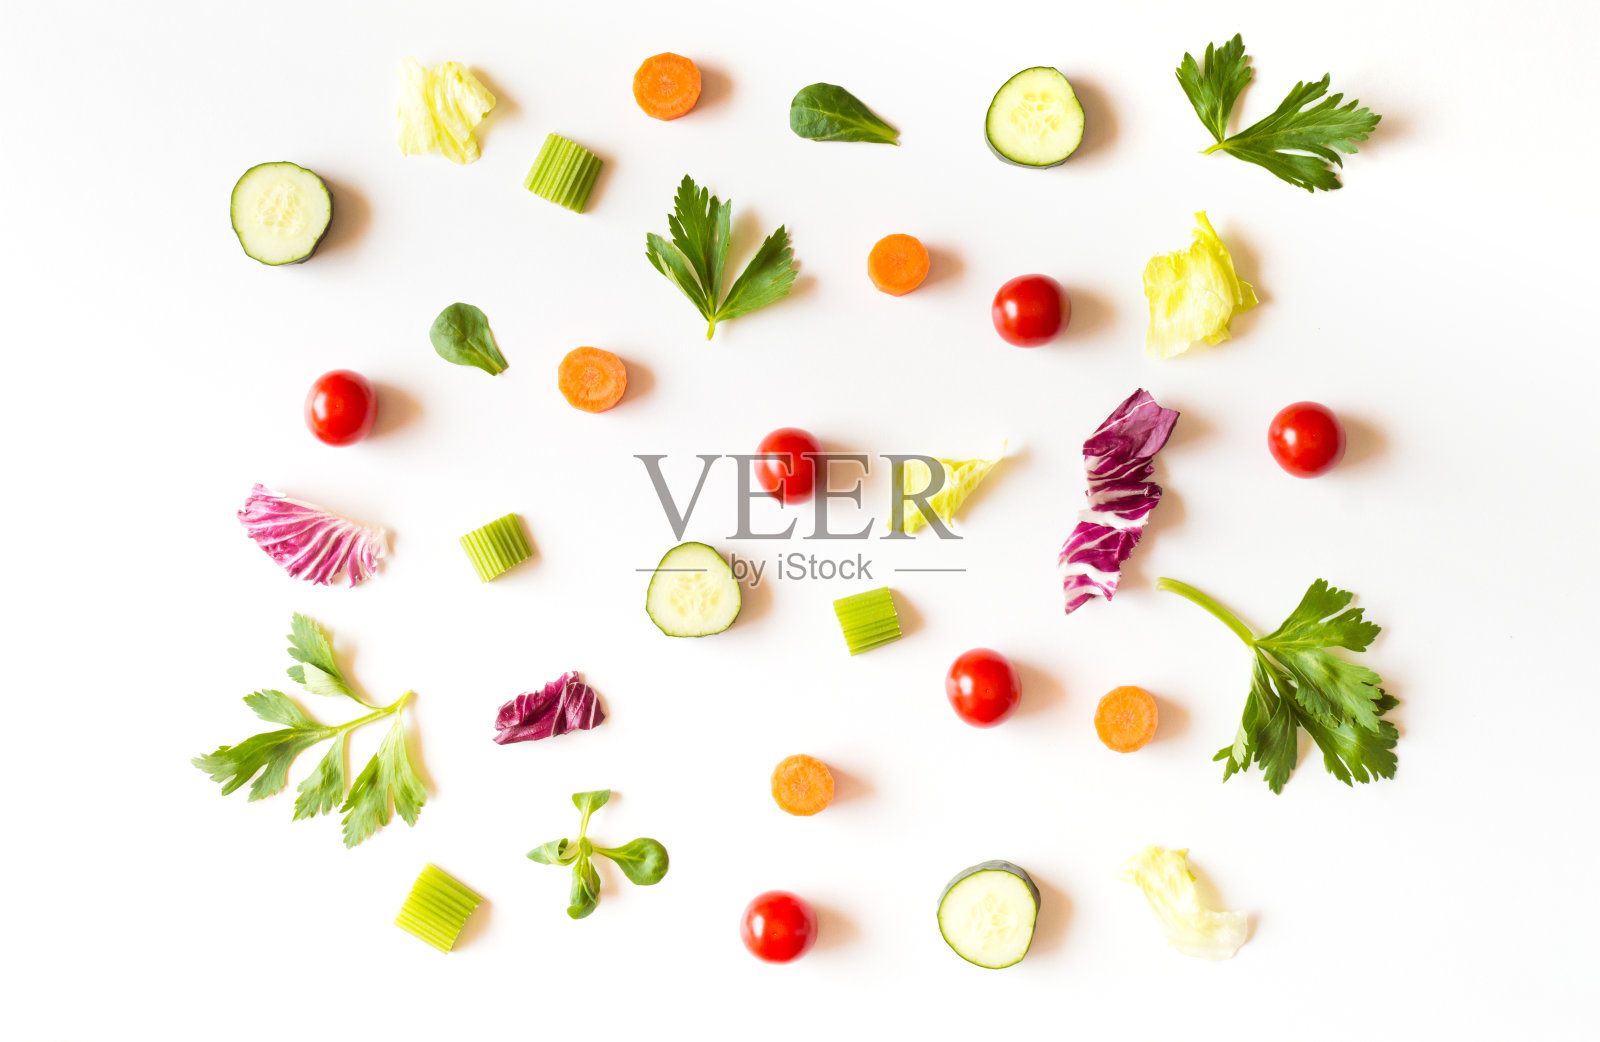 以沙拉、生菜叶、黄瓜、红番茄、胡萝卜、芹菜为食，白色背景照片摄影图片